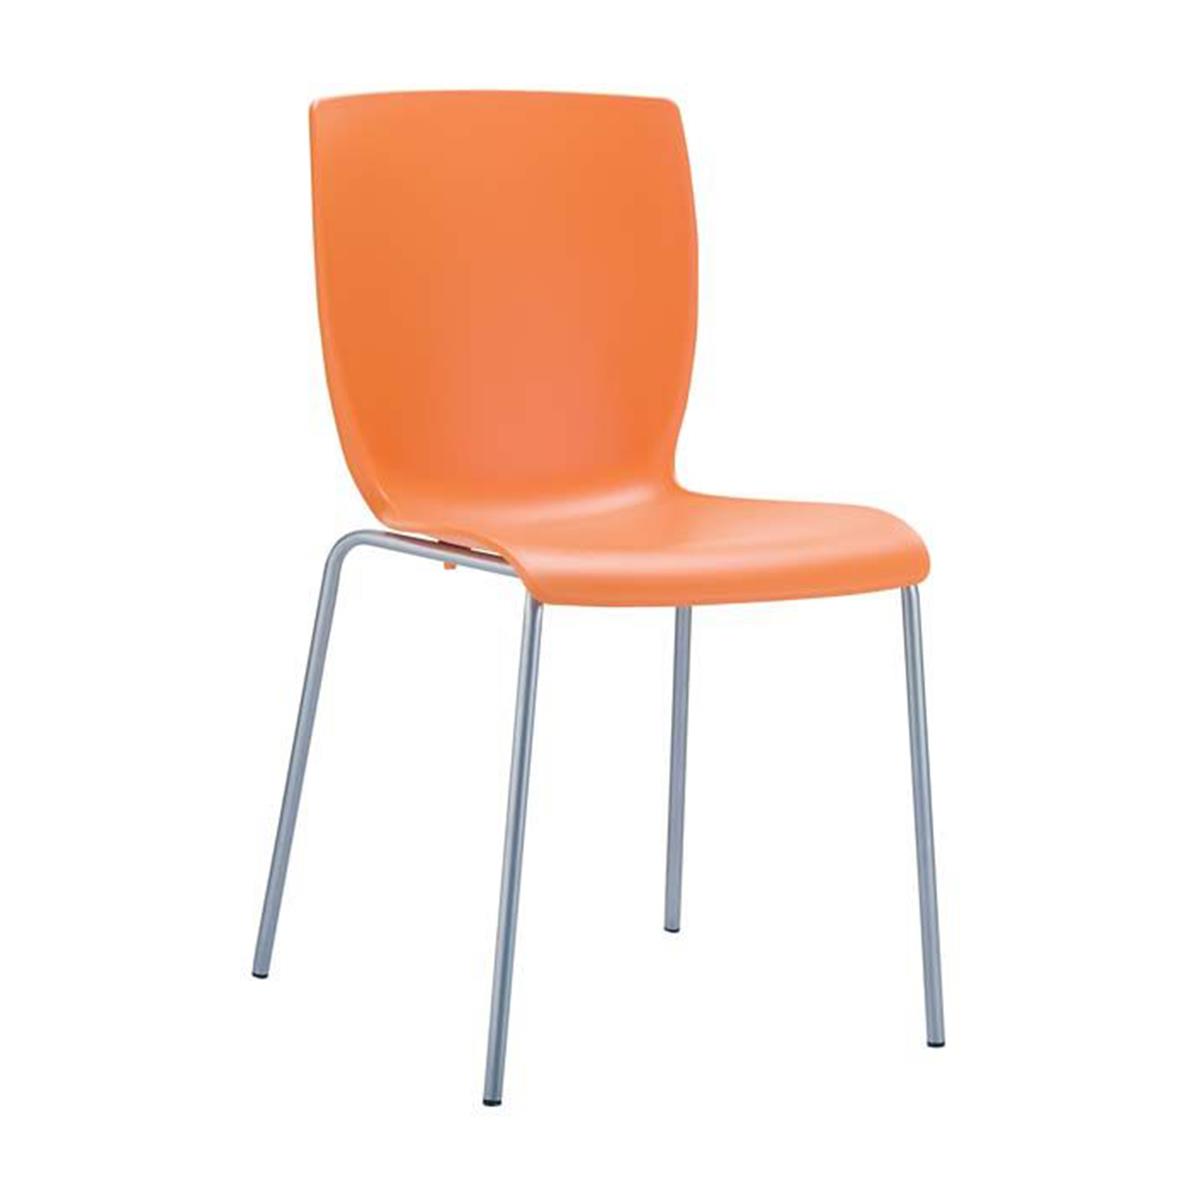 Cadeira de Visita RONNY, Design Simples e Moderno, Em Alumínio, Cor Laranja